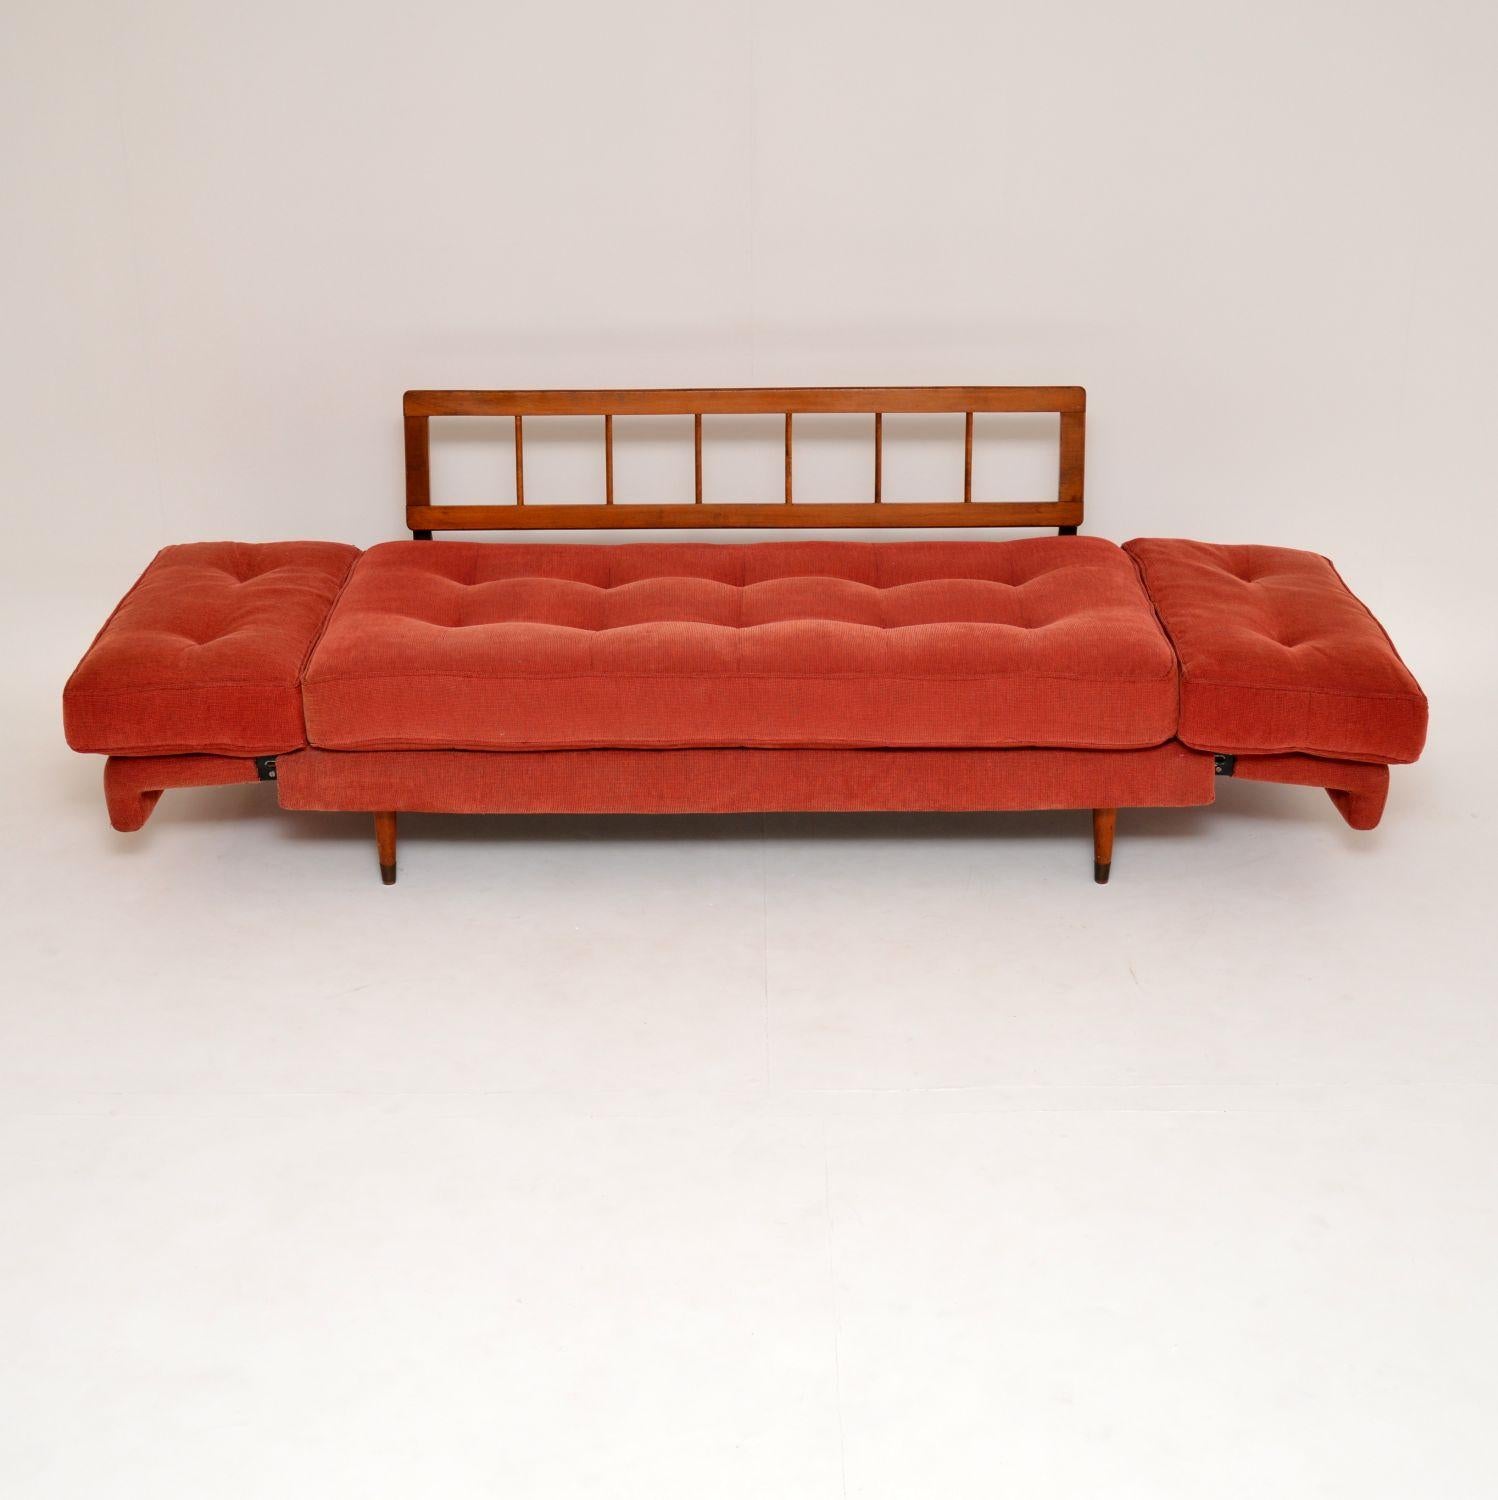 1950s sofa styles